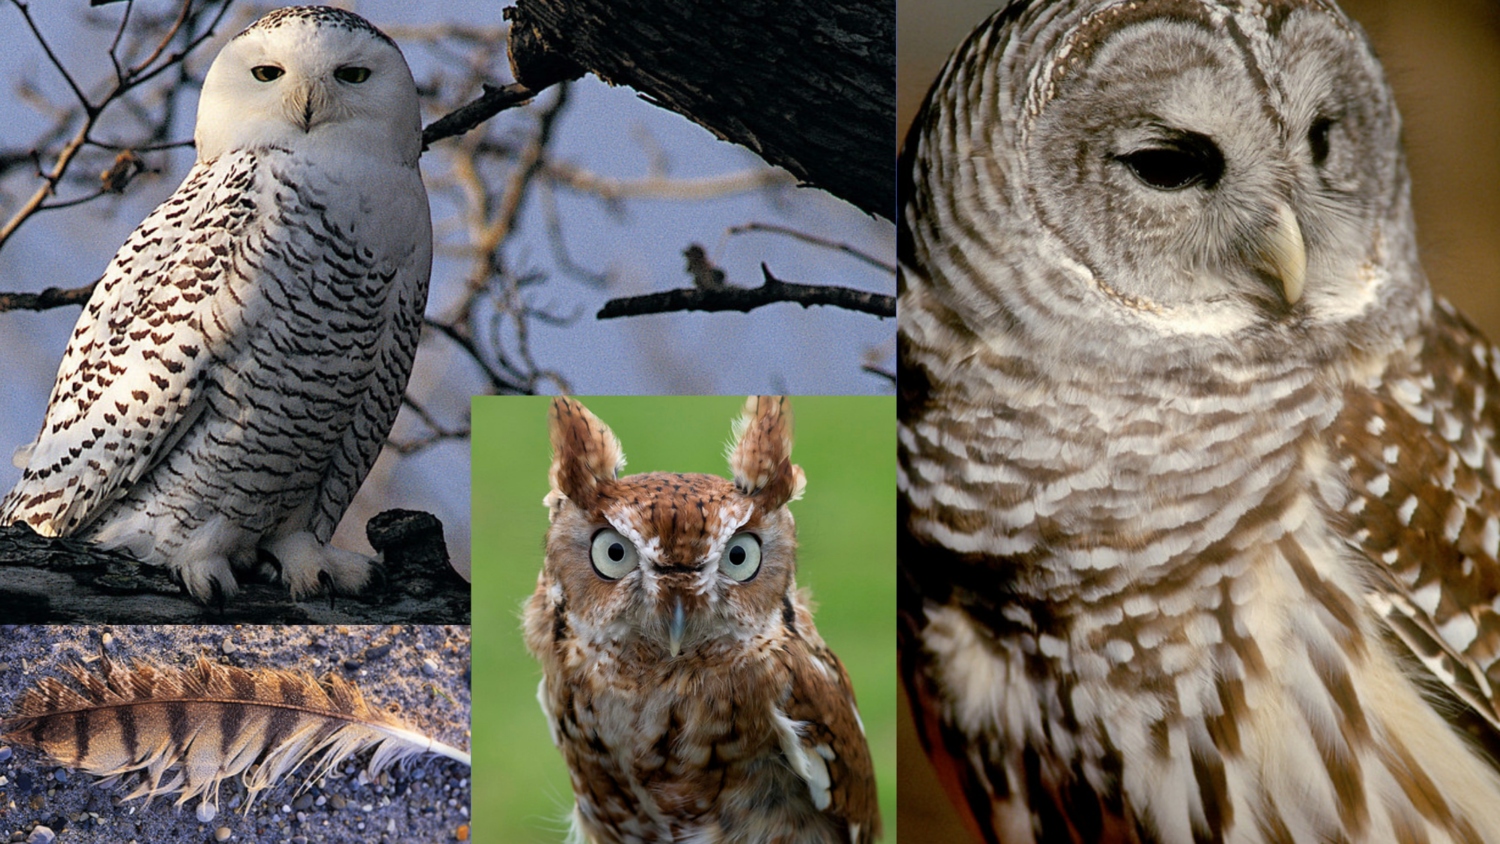 Detail Images Of Owls Nomer 18